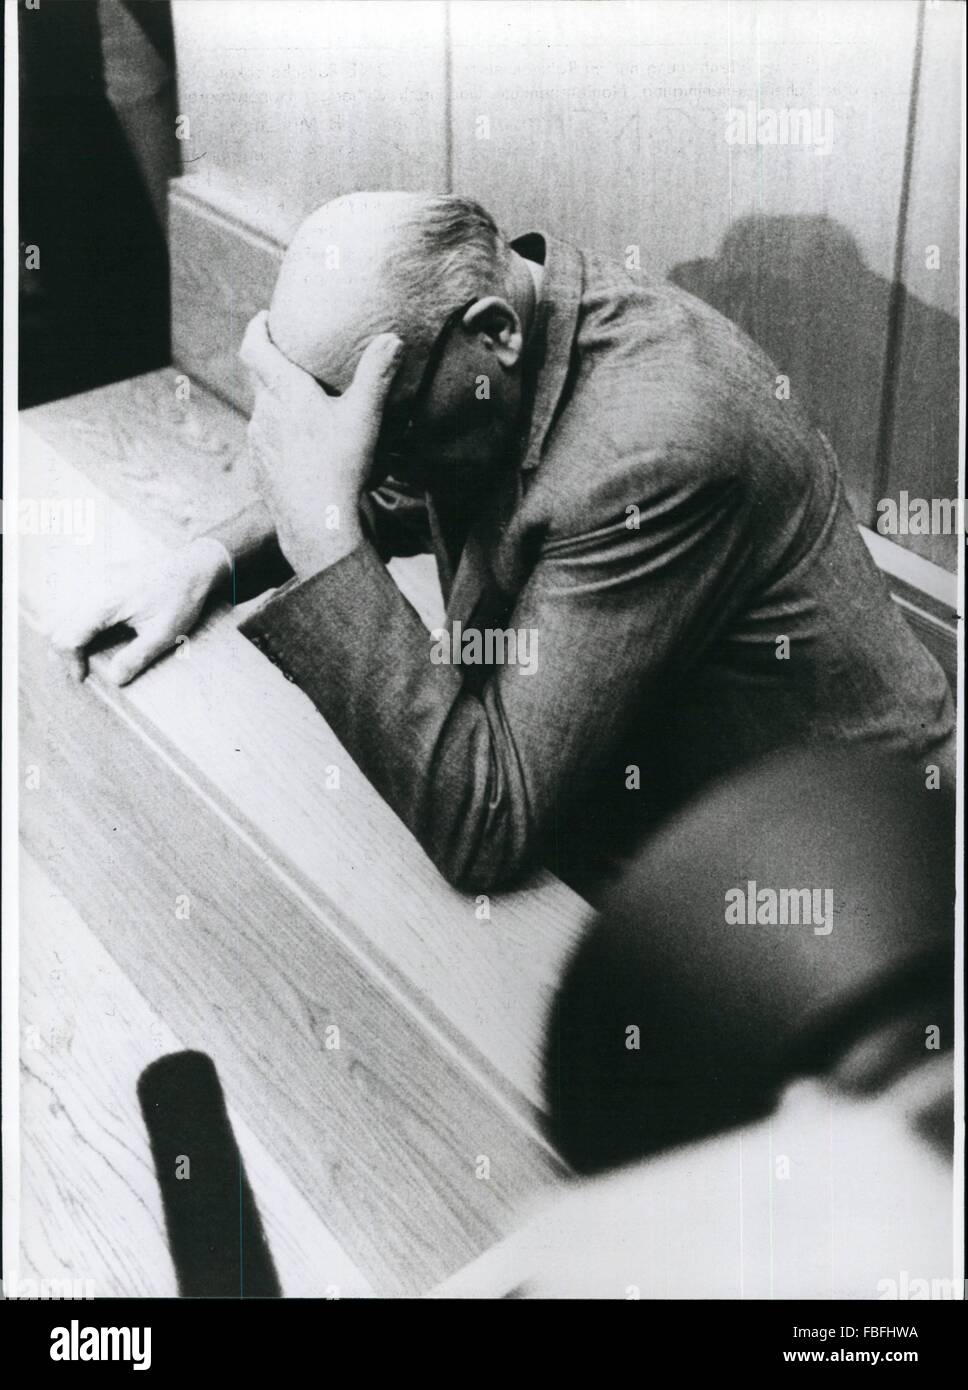 1980 - Frase Lischka-Trial a Colonia/Occidentale-germania: la frase nel cosiddetto Lischka-trial di Colonia/Occidentale-germania era ora pronunced (11.2.80). In questo processo la ex SS-Sturmbannfuher Kurt Lischka (70) e altri due ex membri delle SS. Herbert Hagen (66) e Ernst Heinrichsohn (59) sono stati accusati di supporto per omicidio a innumerevoli ebrei francesi durante la Drittes Reich. News Kurt Liuschika è stato condannato a dieci anni di detenzione, 12 anni per Herbert Hagen und 6 anni per Ernst Heinrichsohn erano trascorsi dalla corte. Mostra fotografica di Kurt Lischka un breve tempo bfore audizione il inviati Foto Stock